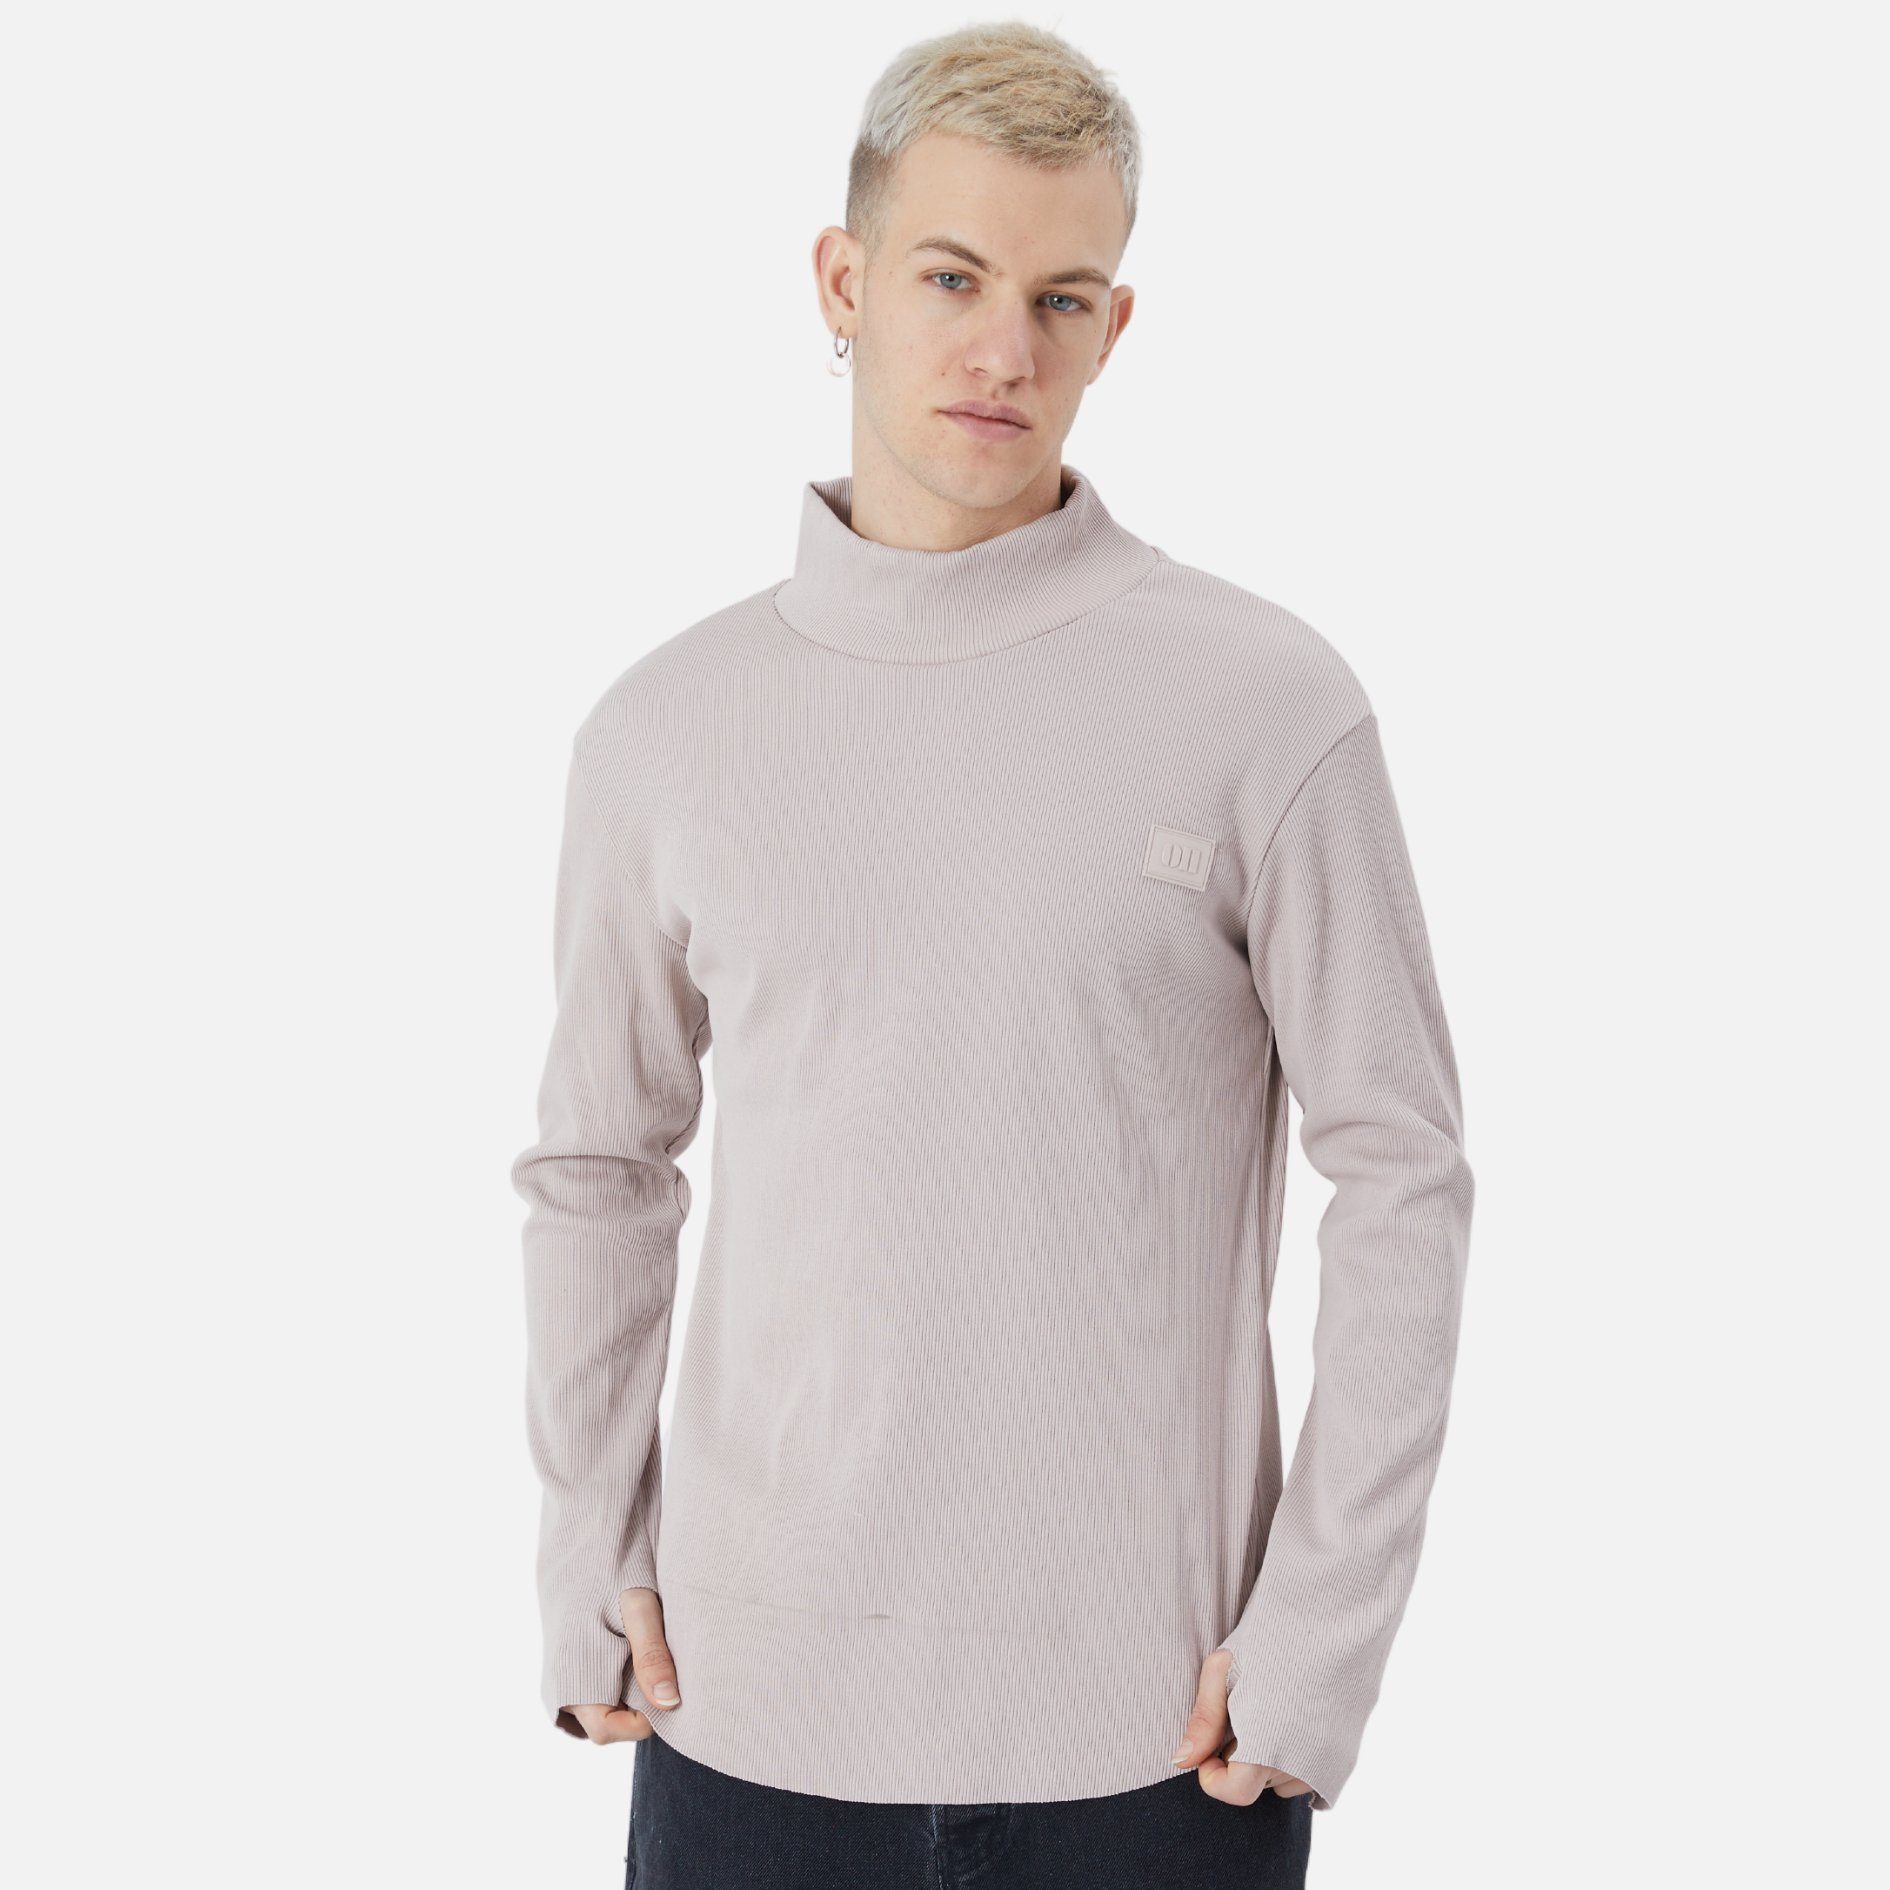 Fit Casuals Beige COFI Rundhals Sweatshirt Regular Sweatshirt Herren Pullover